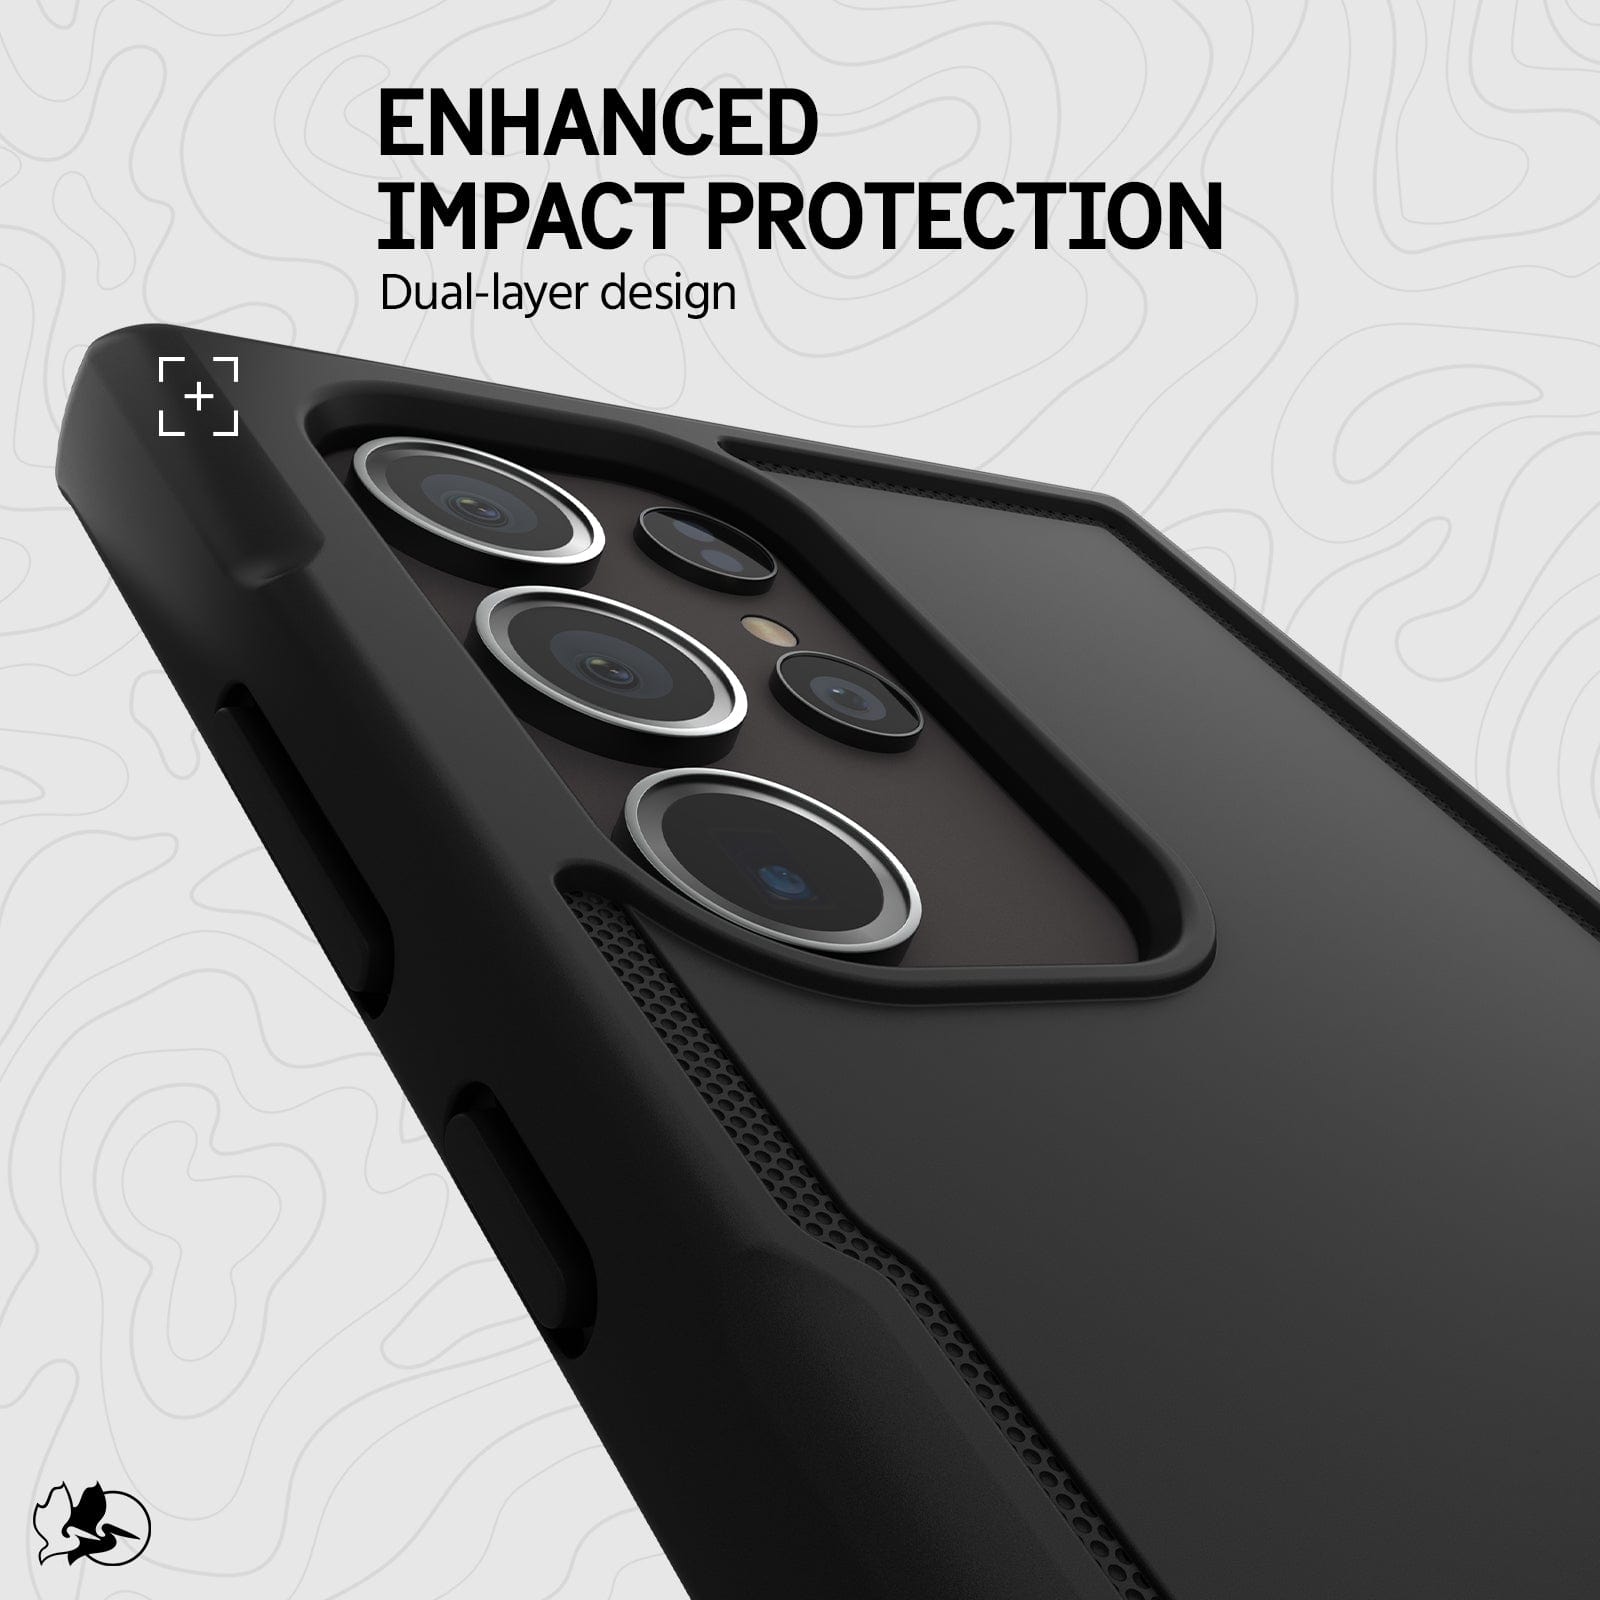  Pelican Protector - Samsung Galaxy S24 Ultra Case [6.8